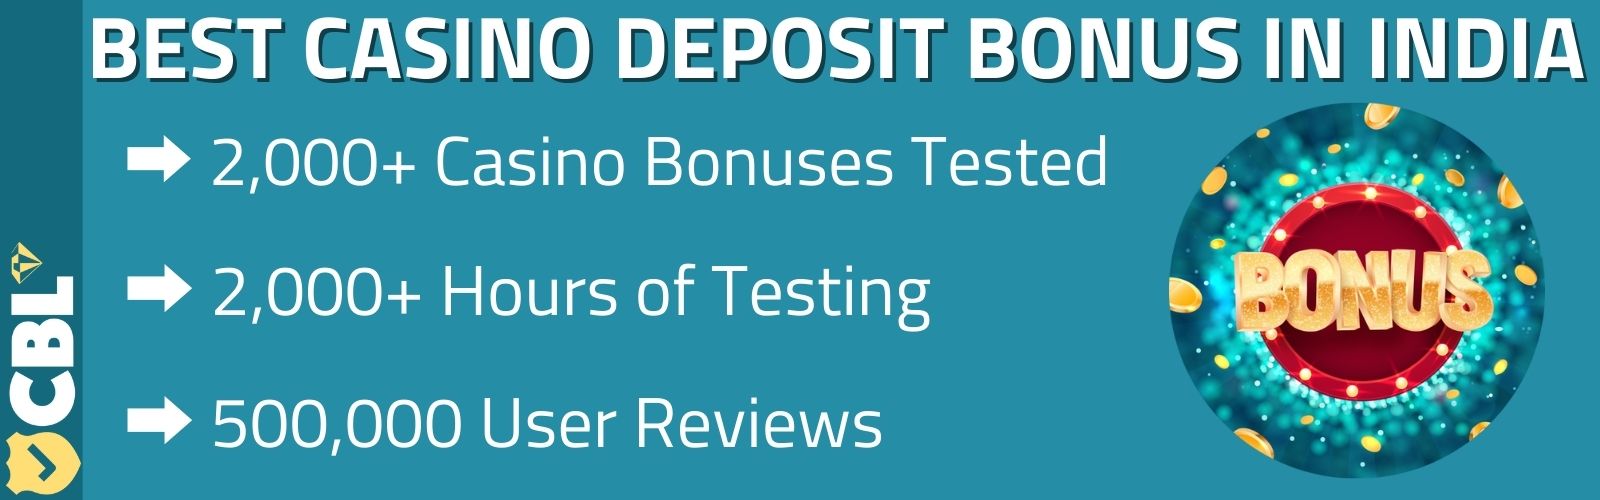 deposit bonus India